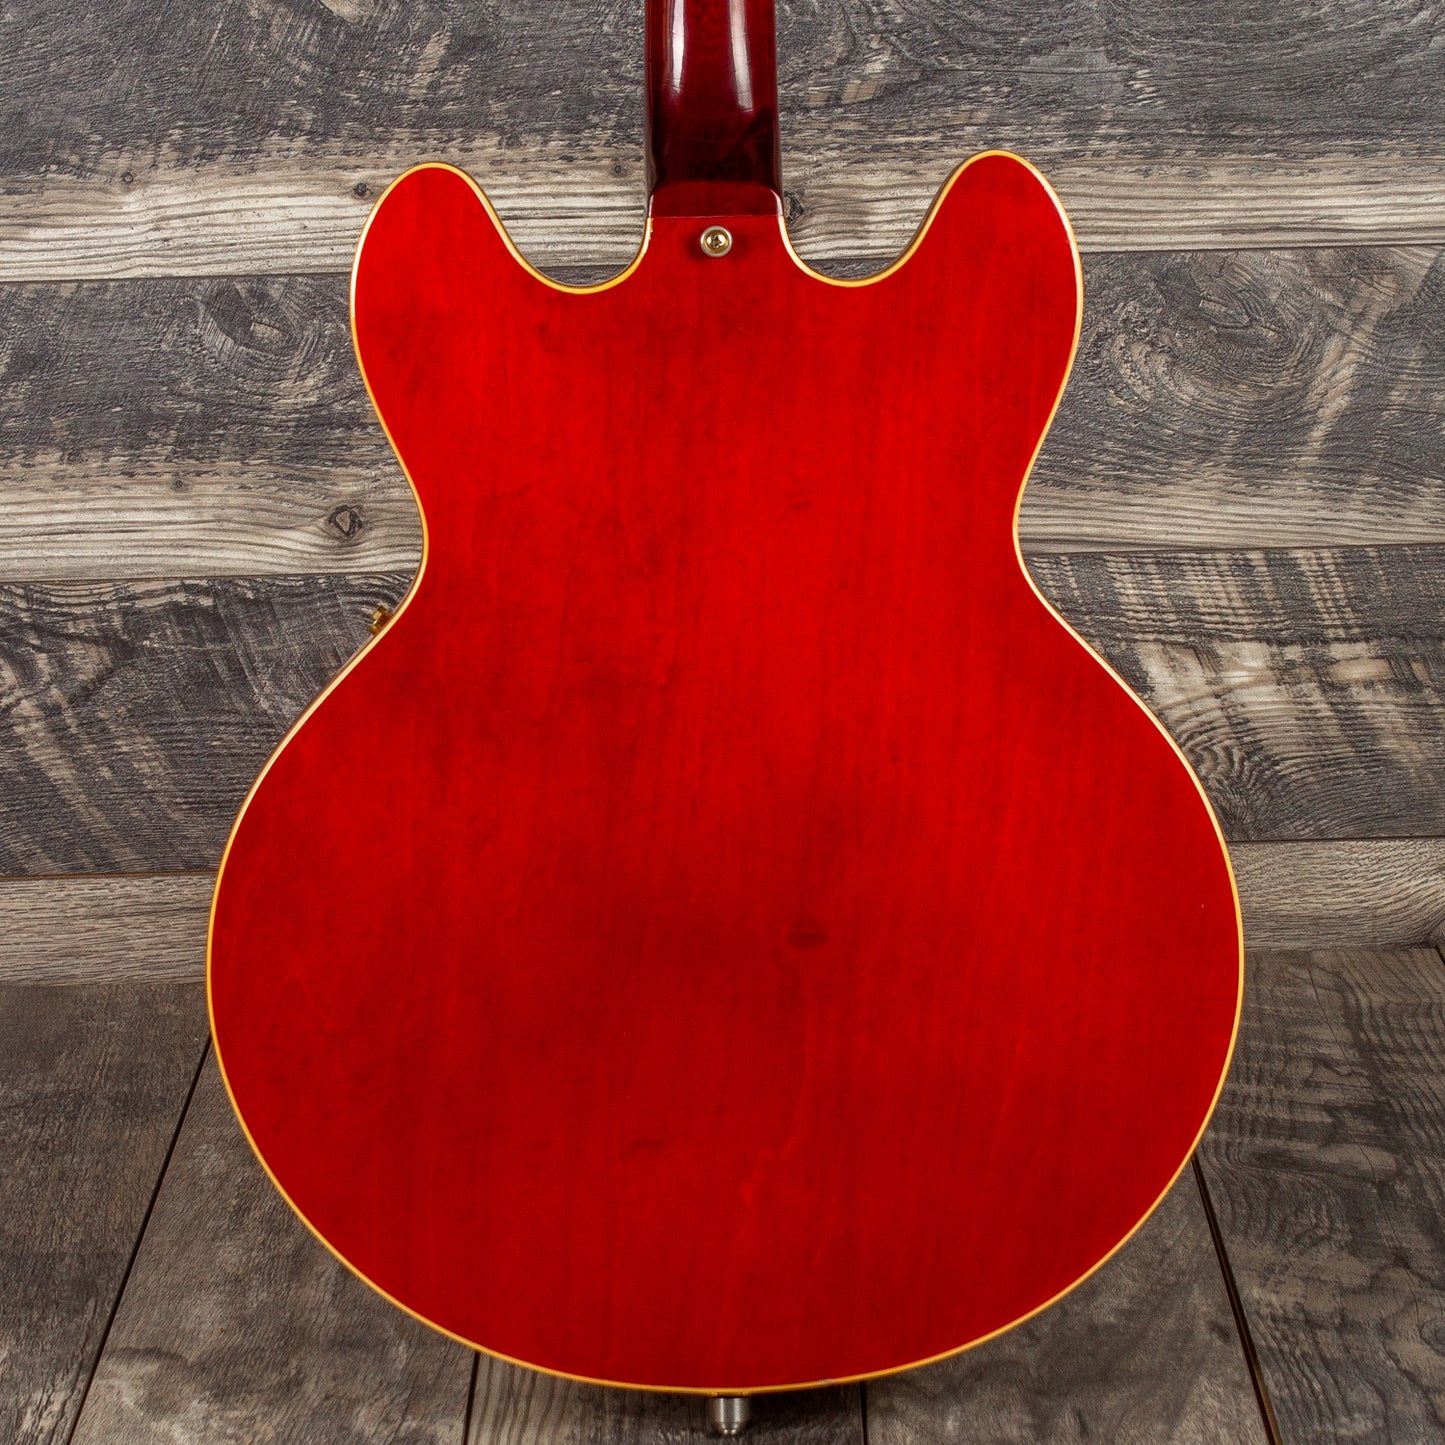 1966 Gibson ES-345